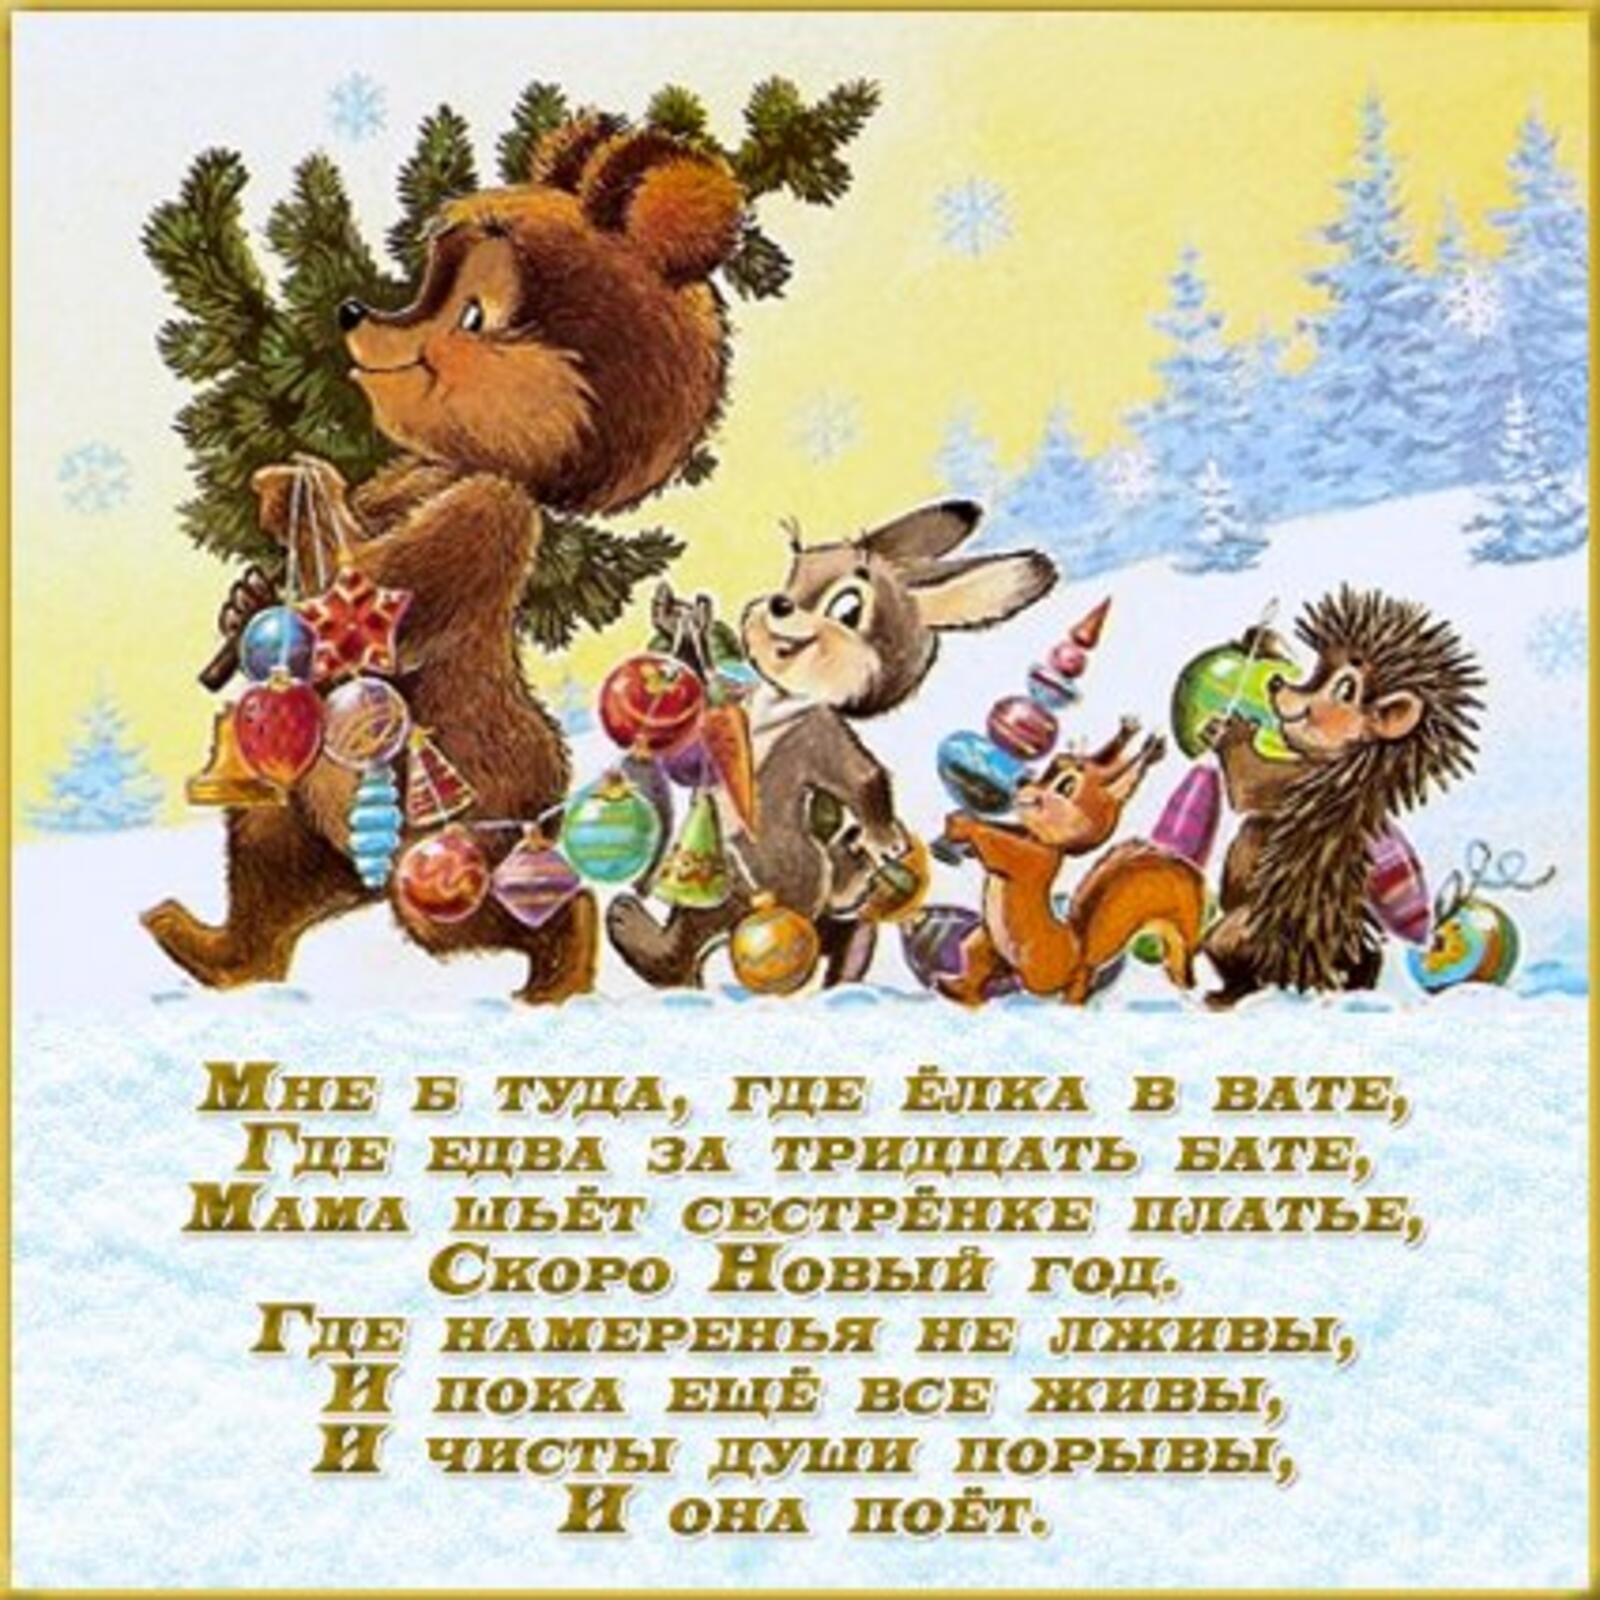 一张以圣诞树 动物 冬季为主题的明信片